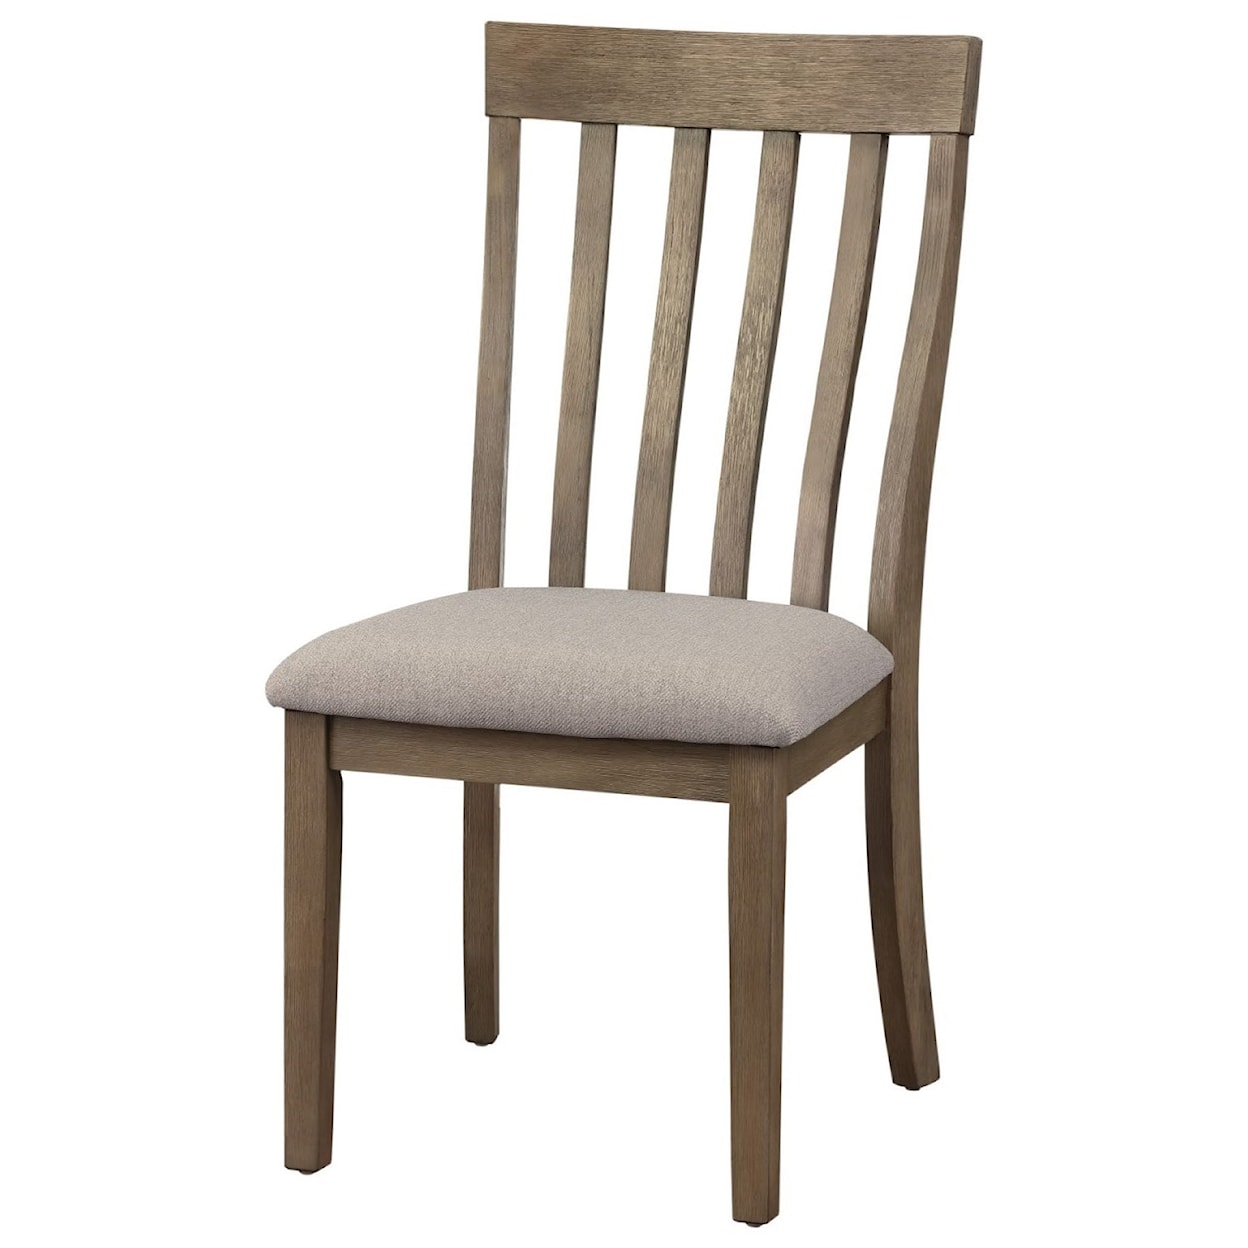 Homelegance Armhurst Side Chair